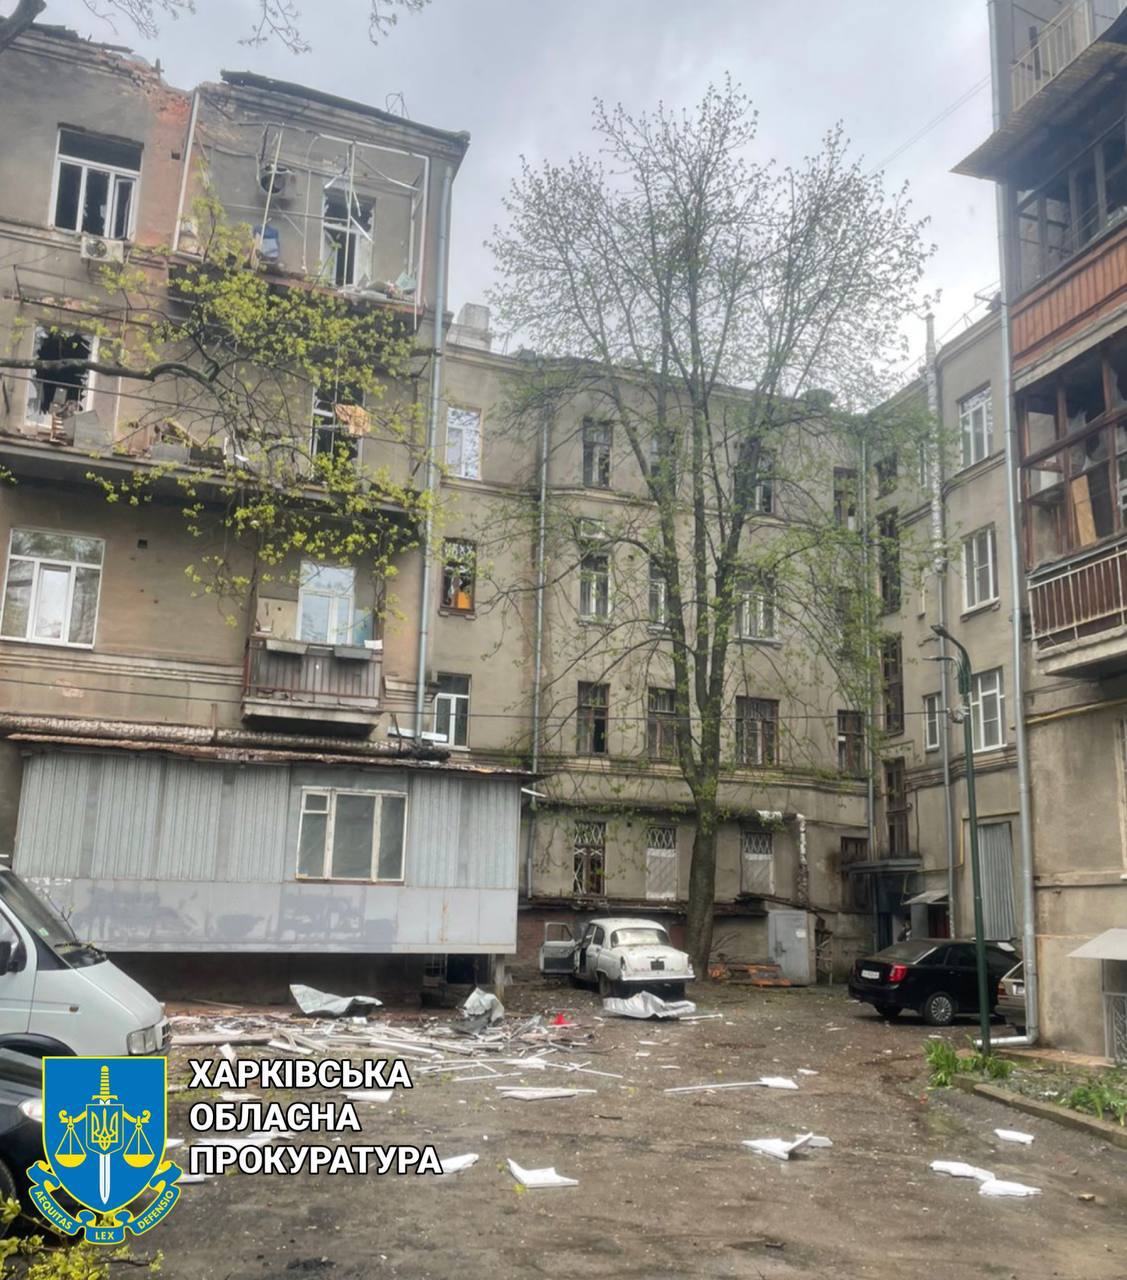 Дома в центре Харькова с выбитыми окнами